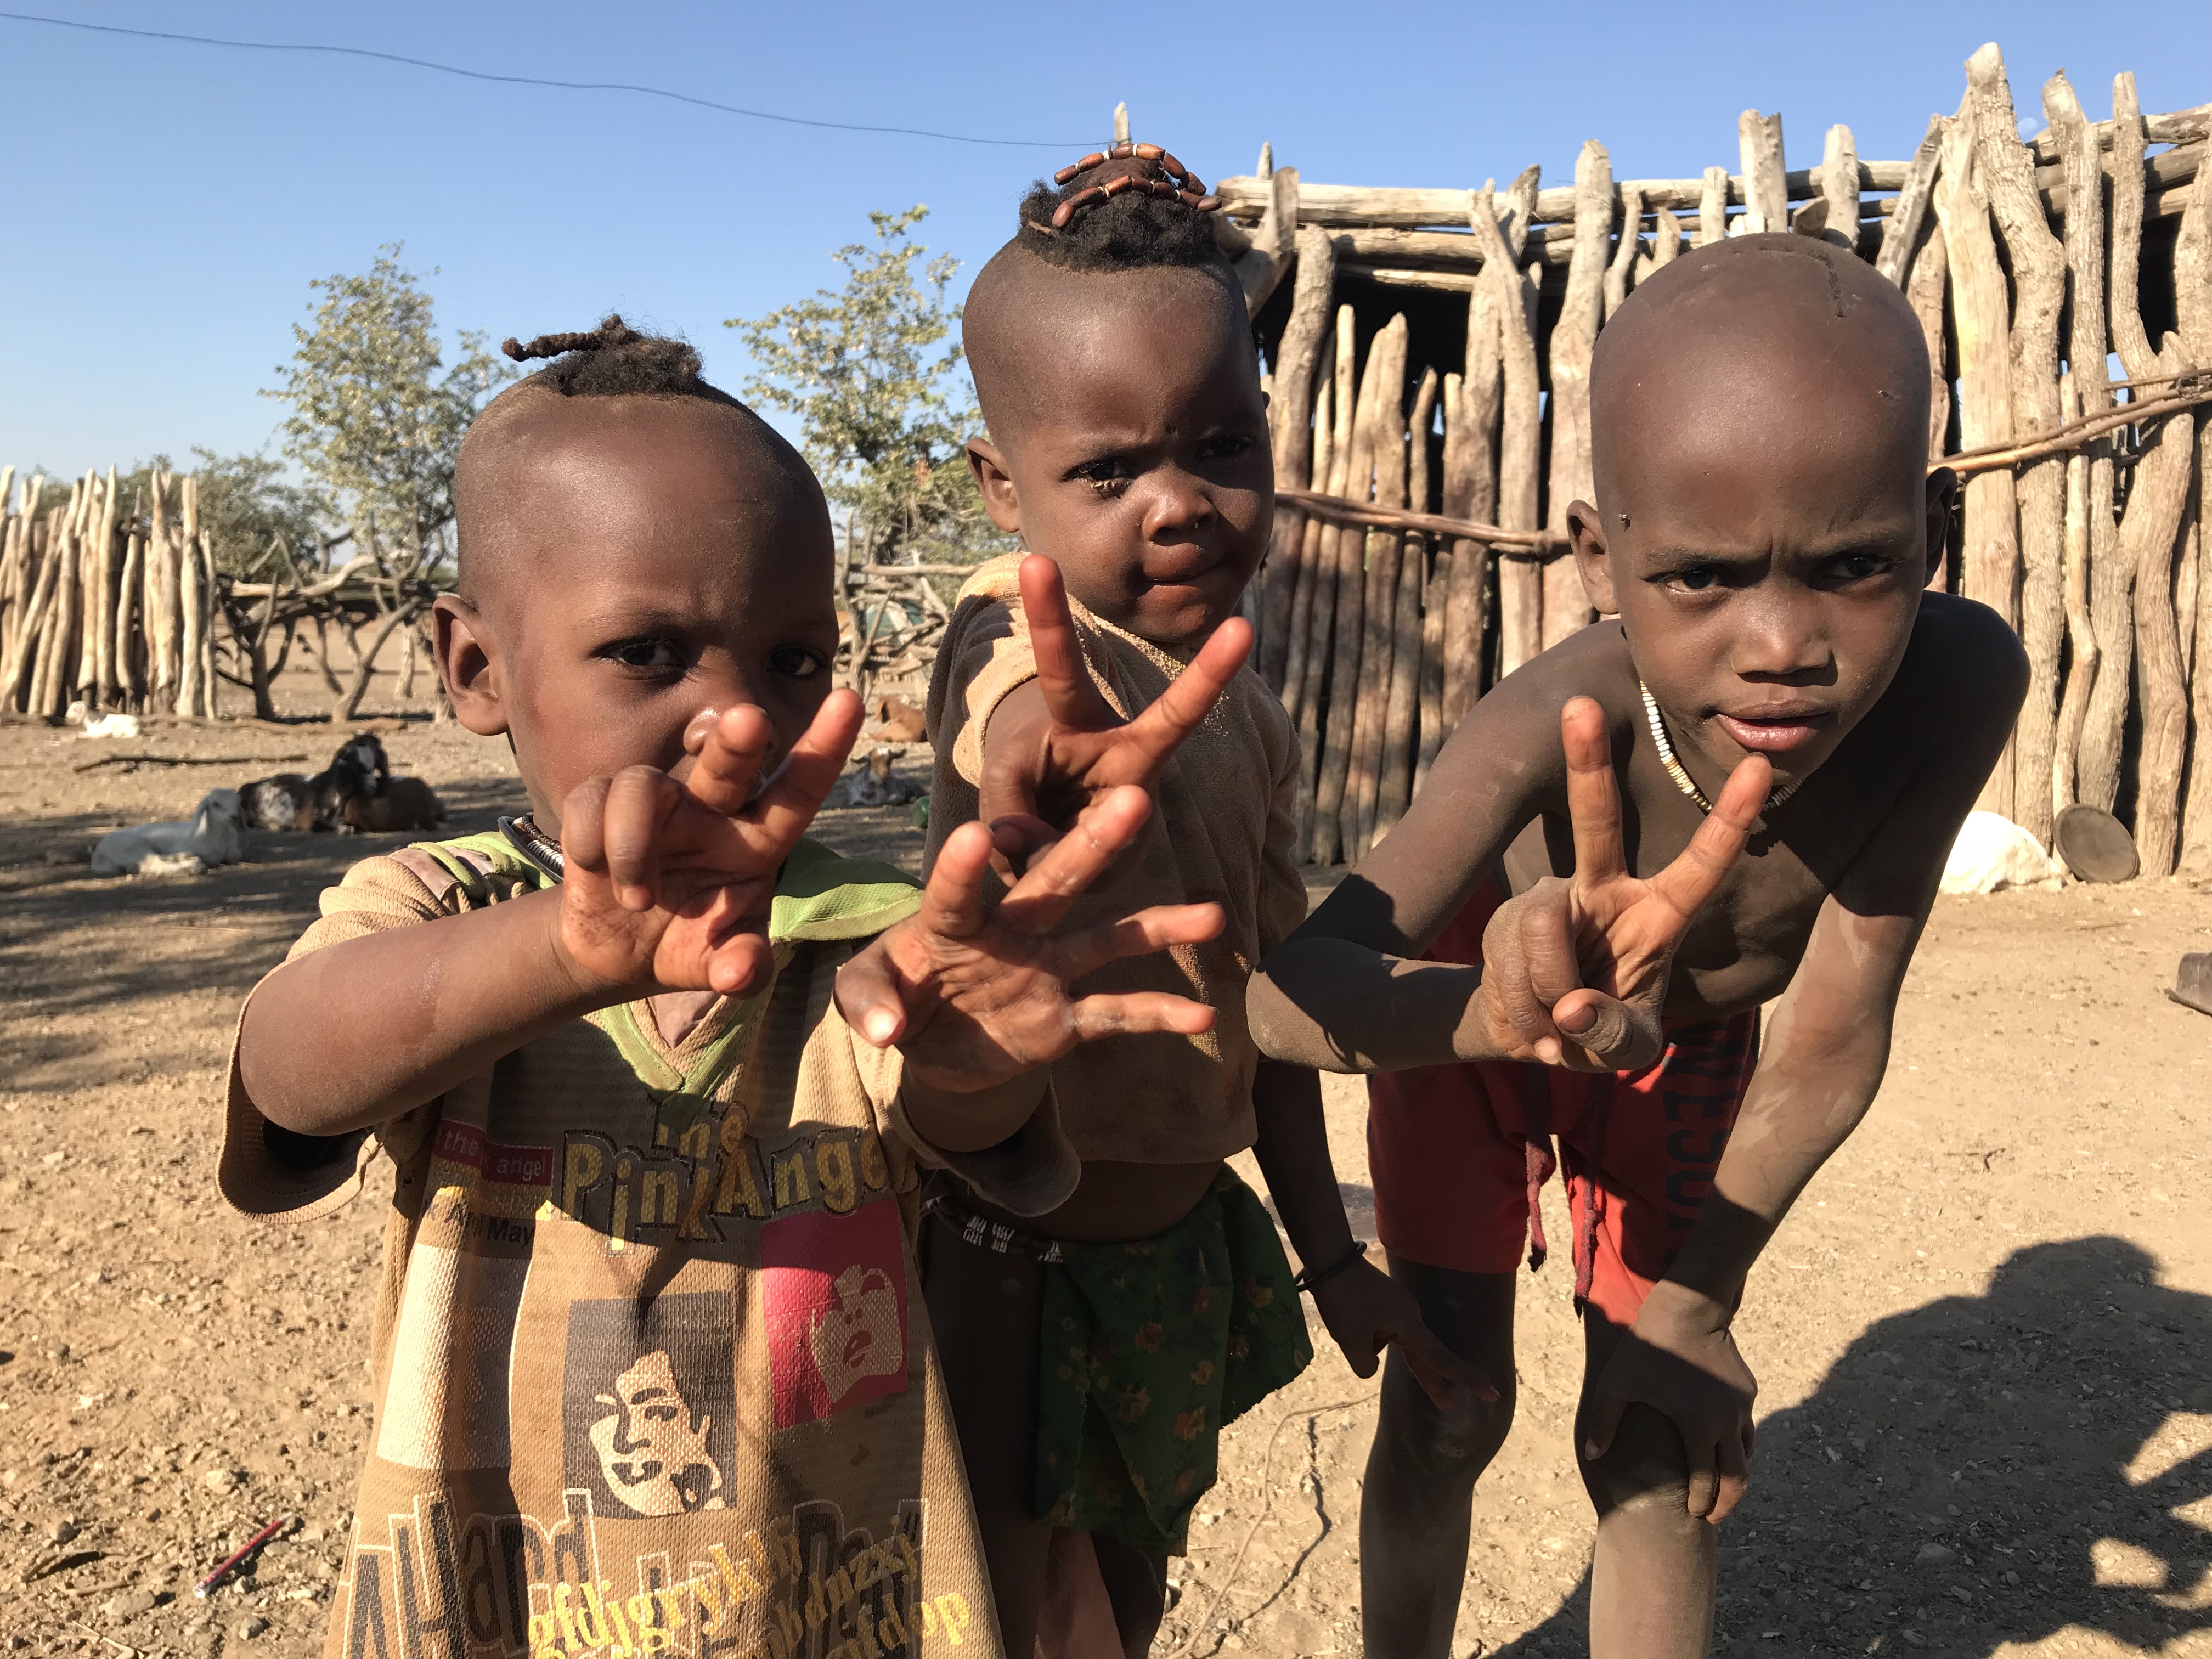 Herero children, Namibia